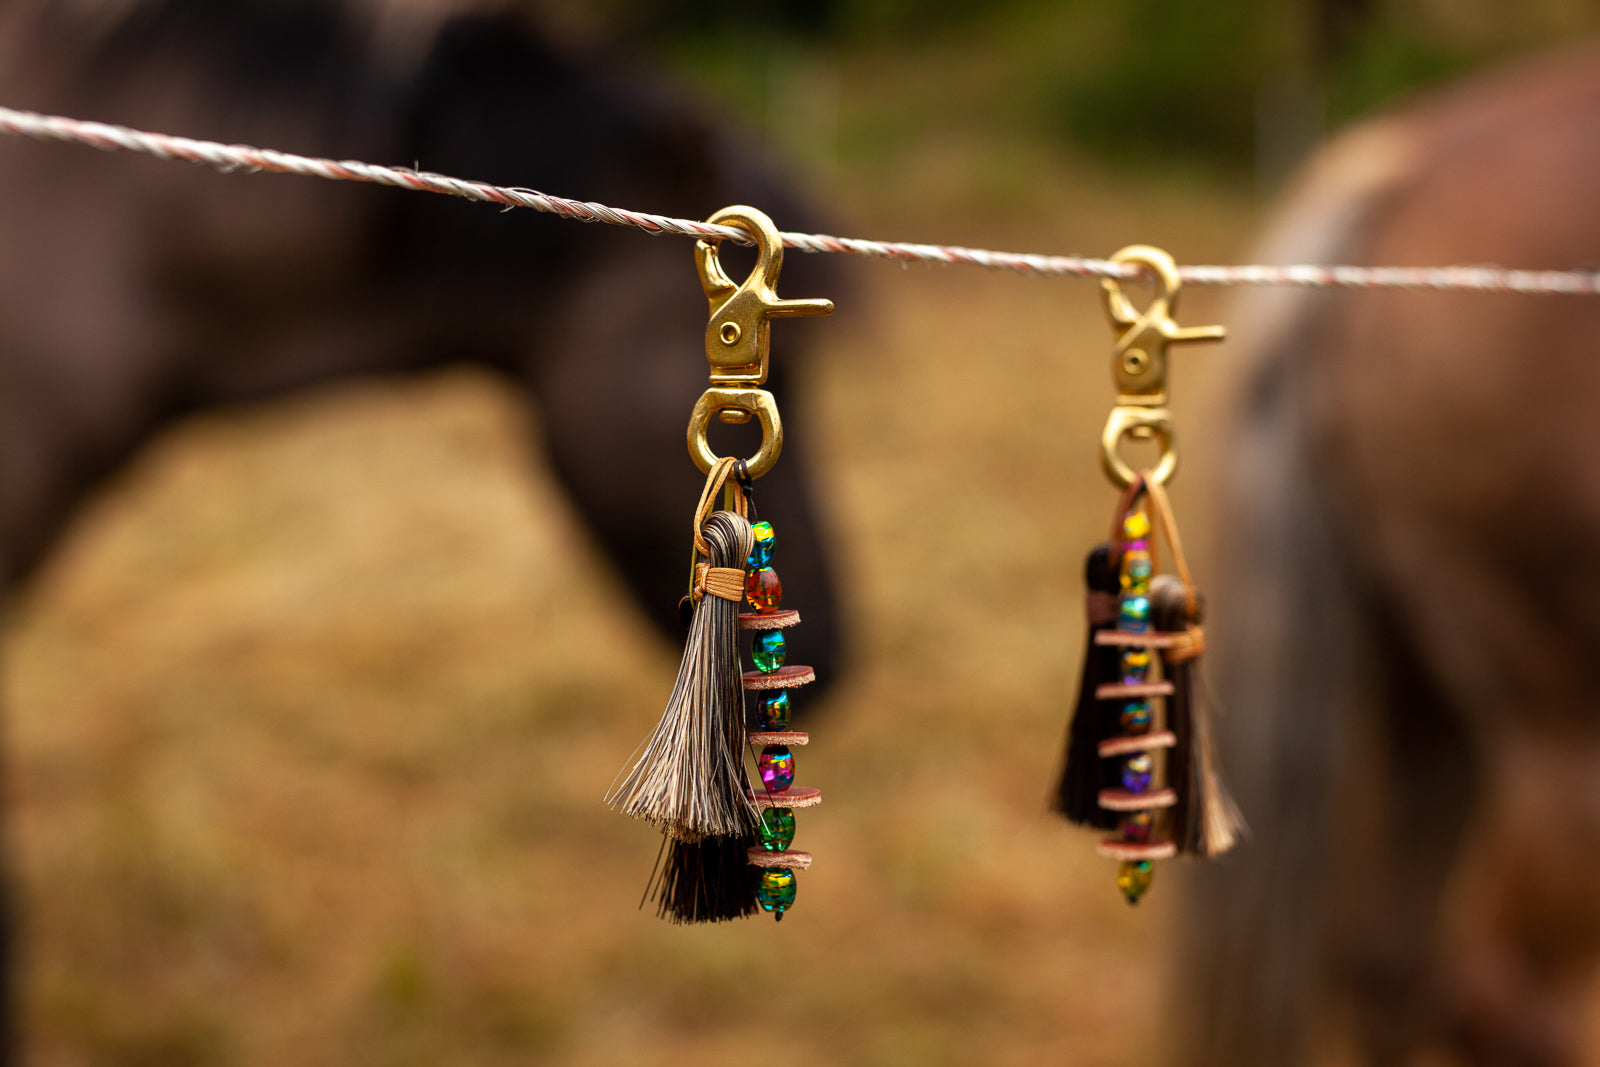 Anhänger Wild Horses mit Pferdehaar Quasten Leder und bunten Perlen an einem Scherenkarabiner aus Messing Handgemachte Unikate von der JZ Leder Manufaktur